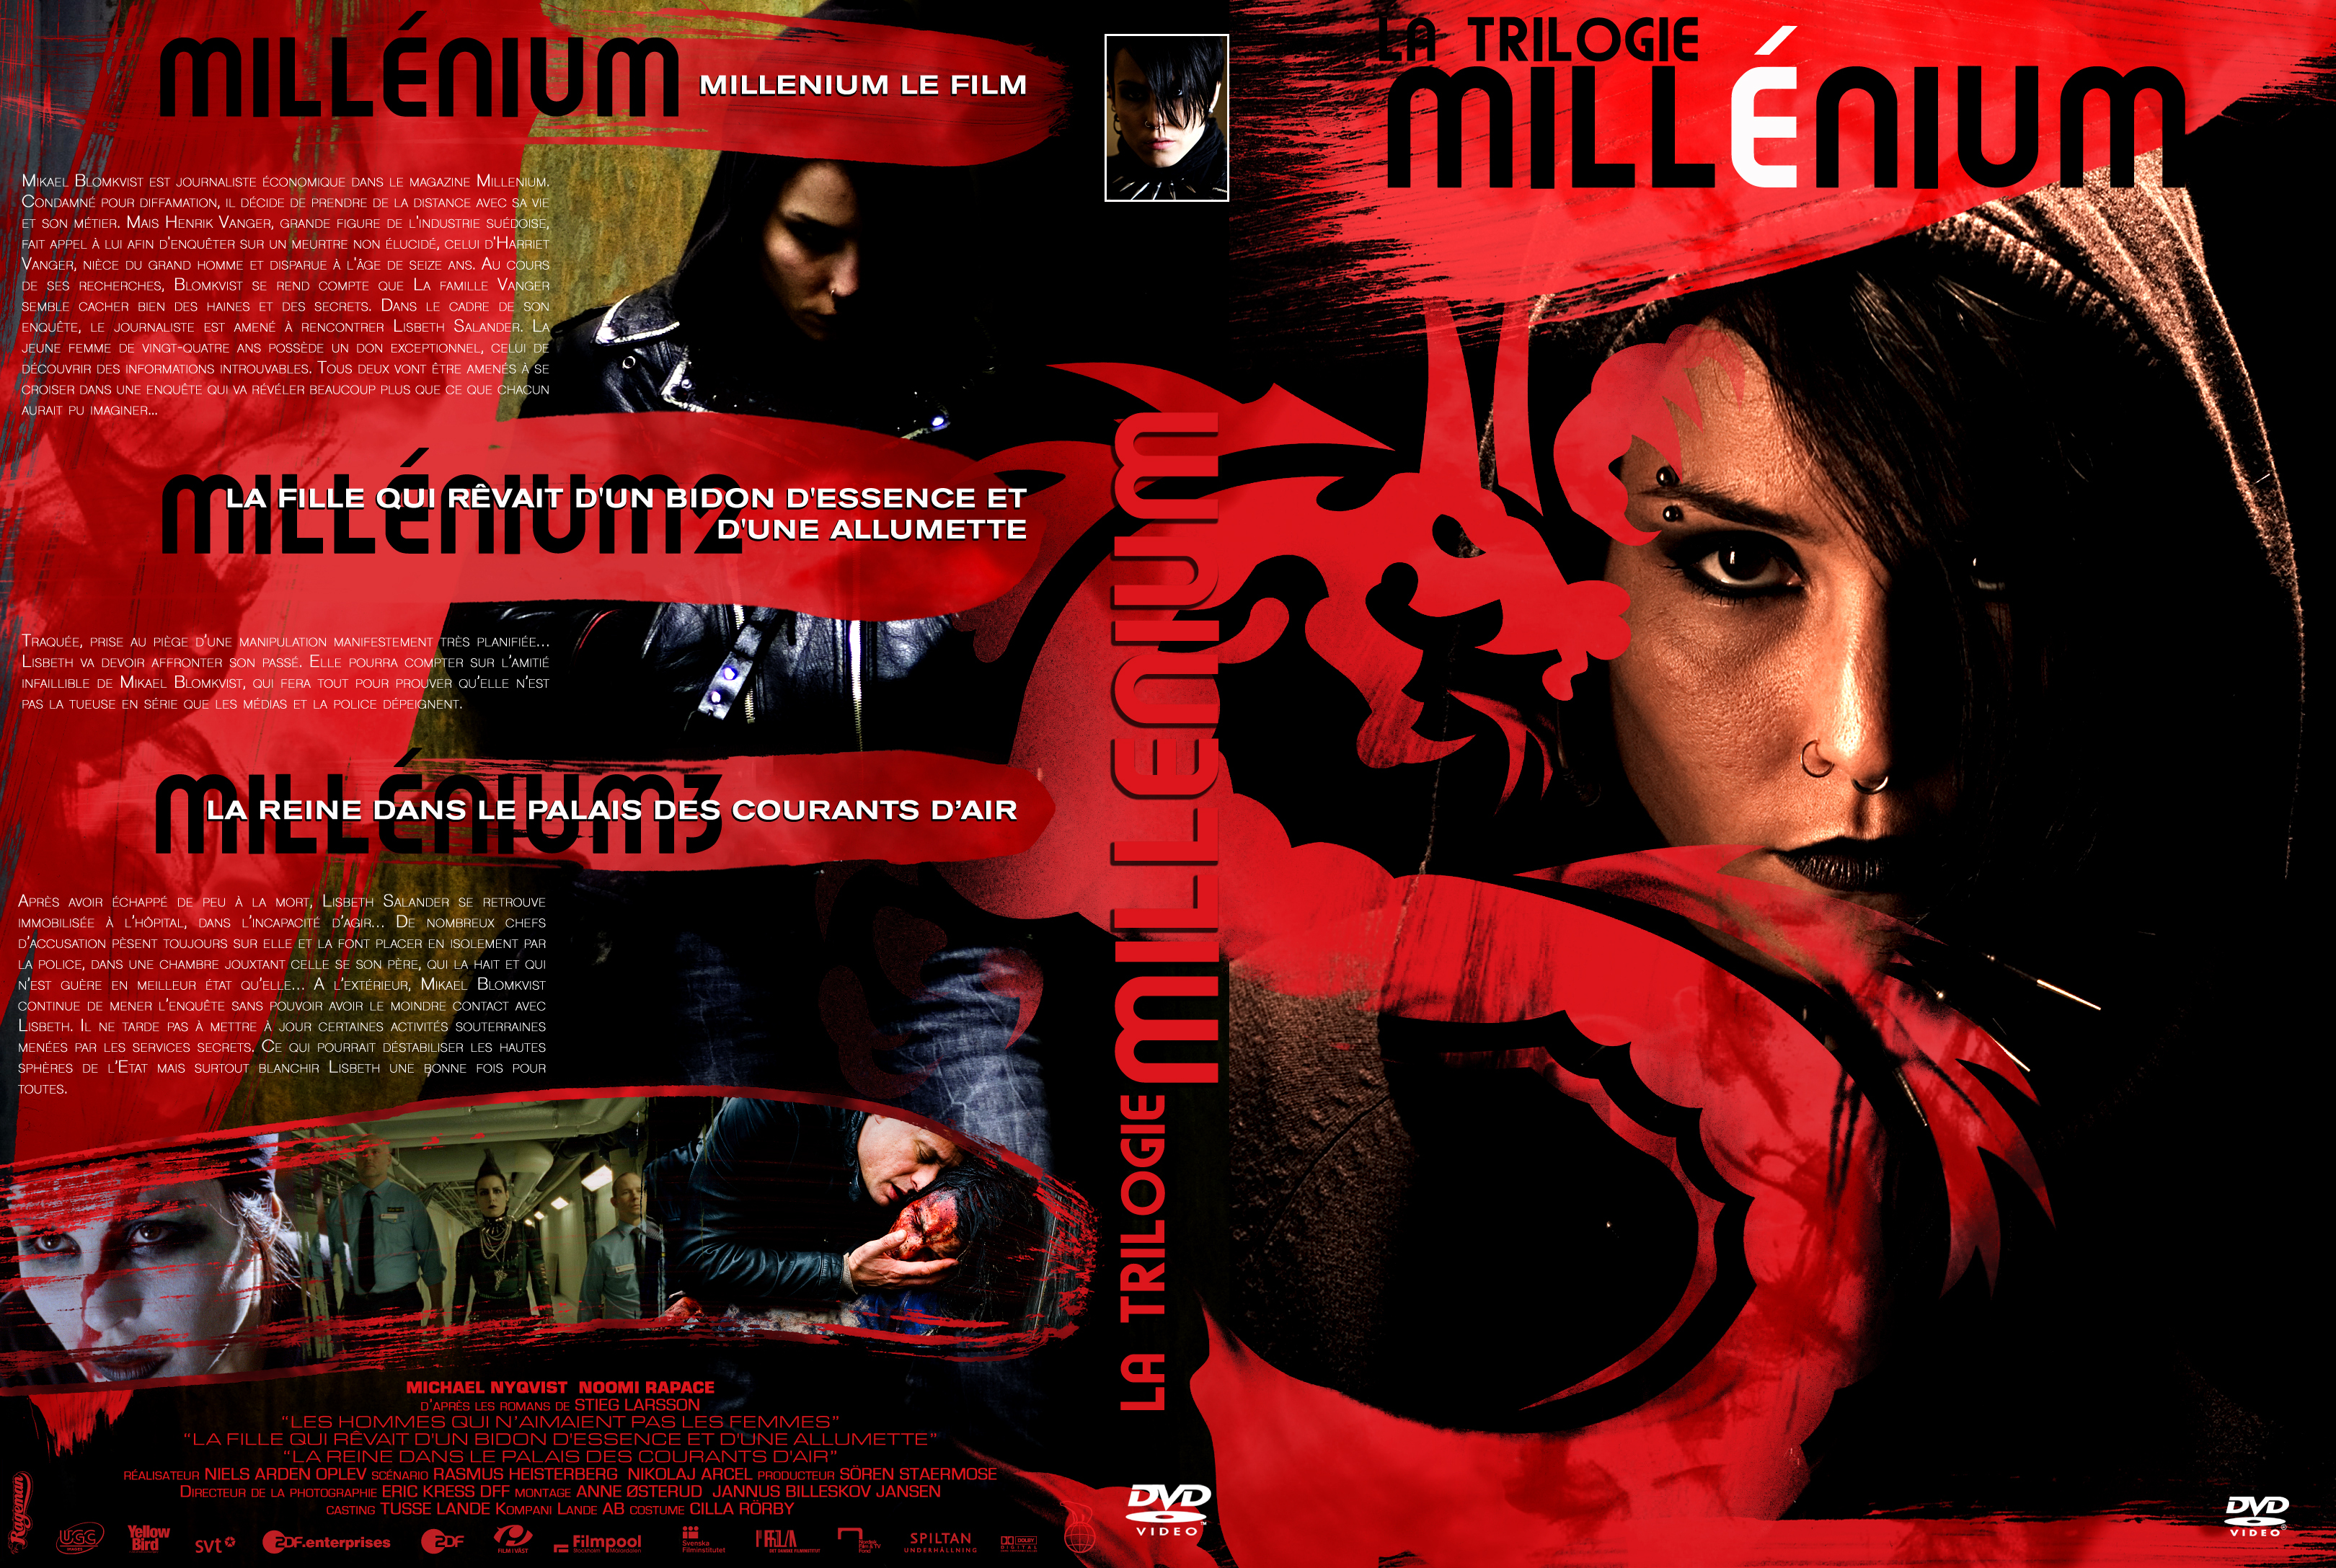 Jaquette DVD Millenium Trilogie custom